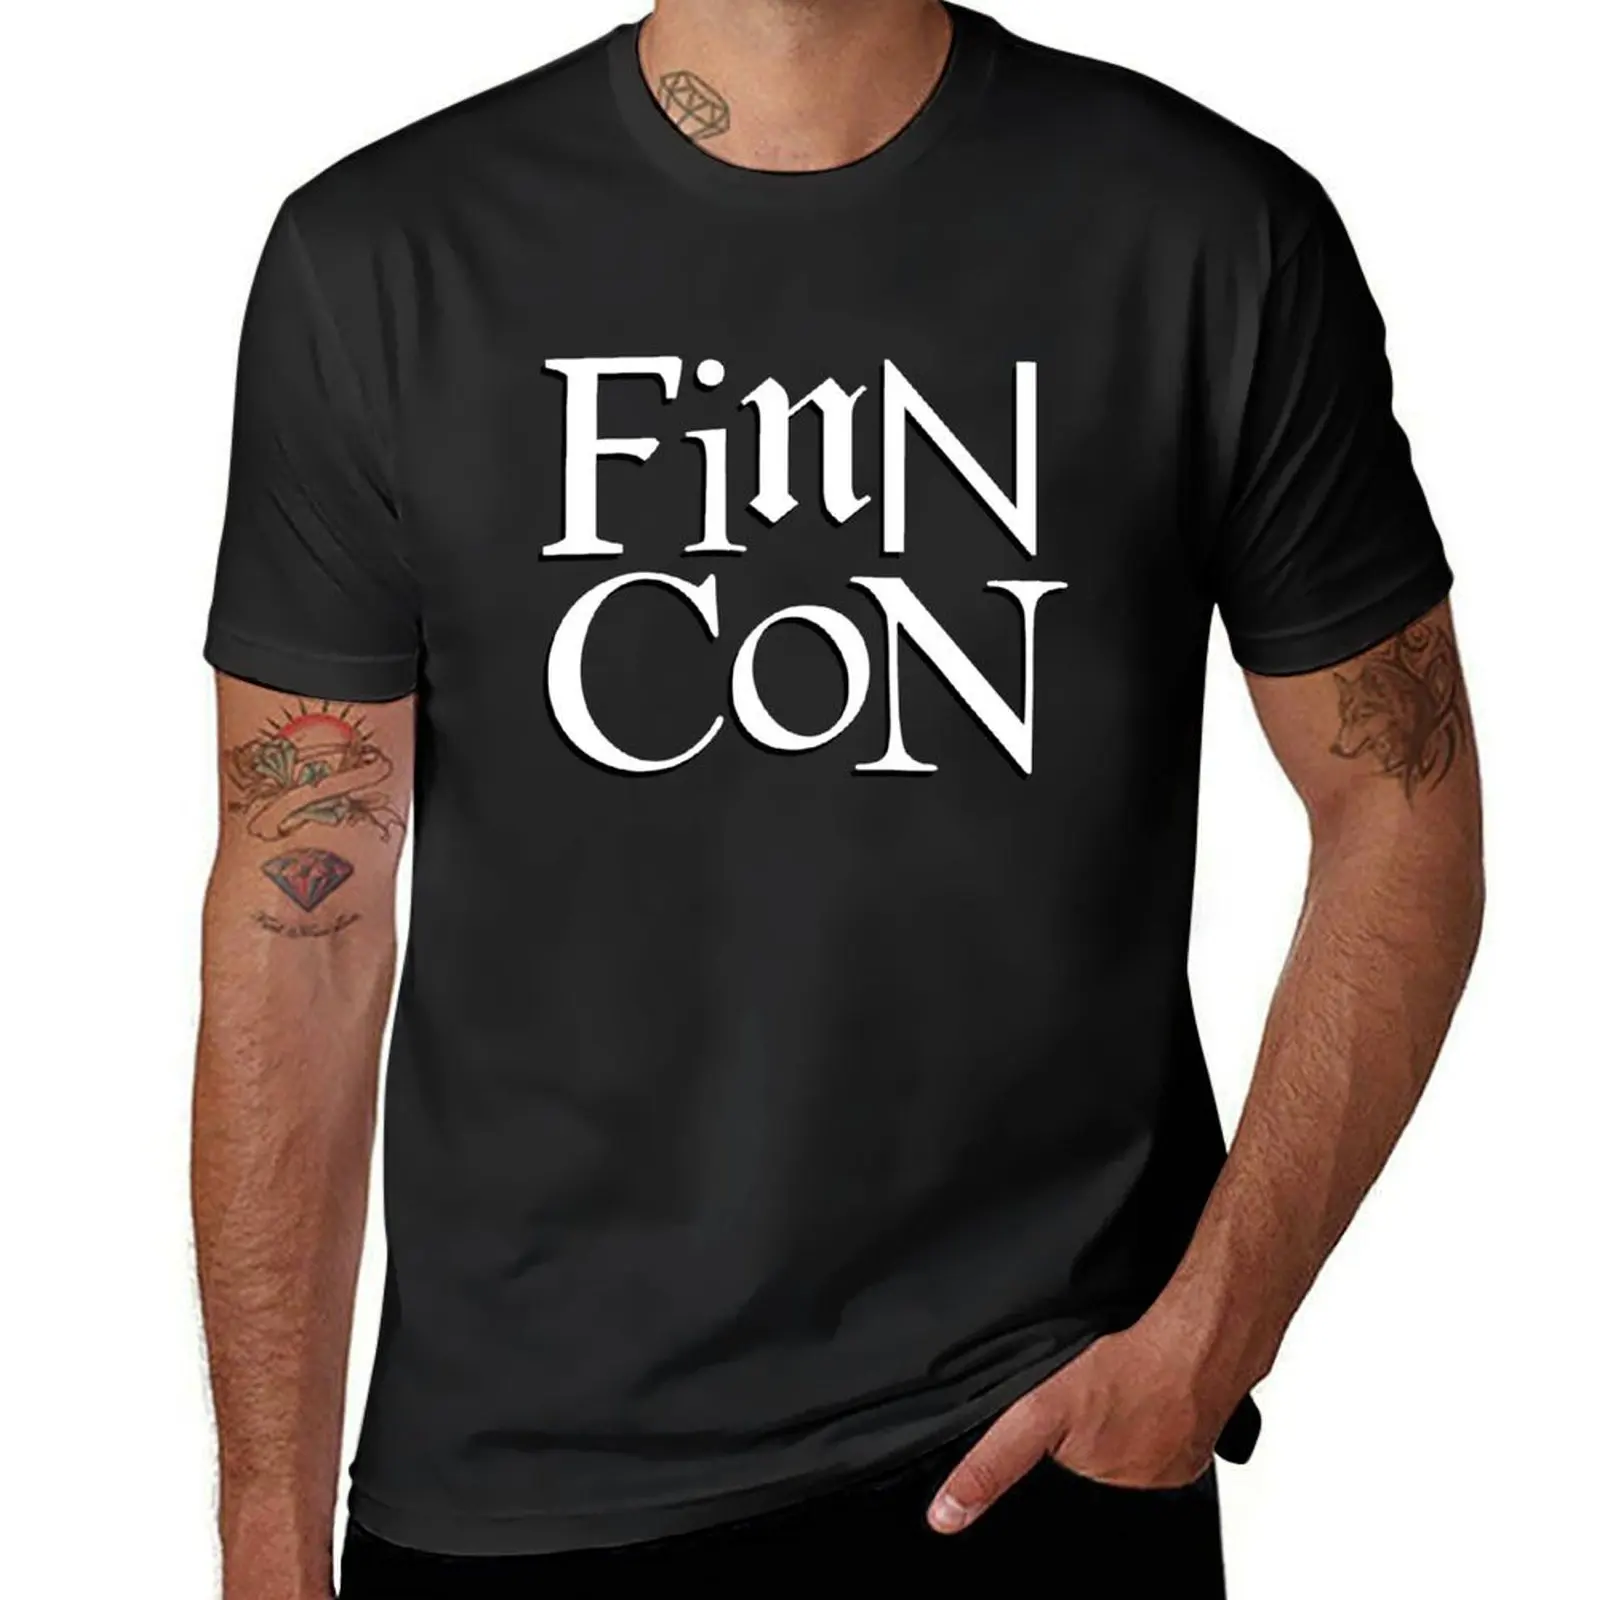 

Футболка с логотипом фирмы Finncon, милые топы, быстросохнущие для мальчиков, индивидуальный дизайн, ваши собственные мужские футболки с графическим рисунком, большие и высокие